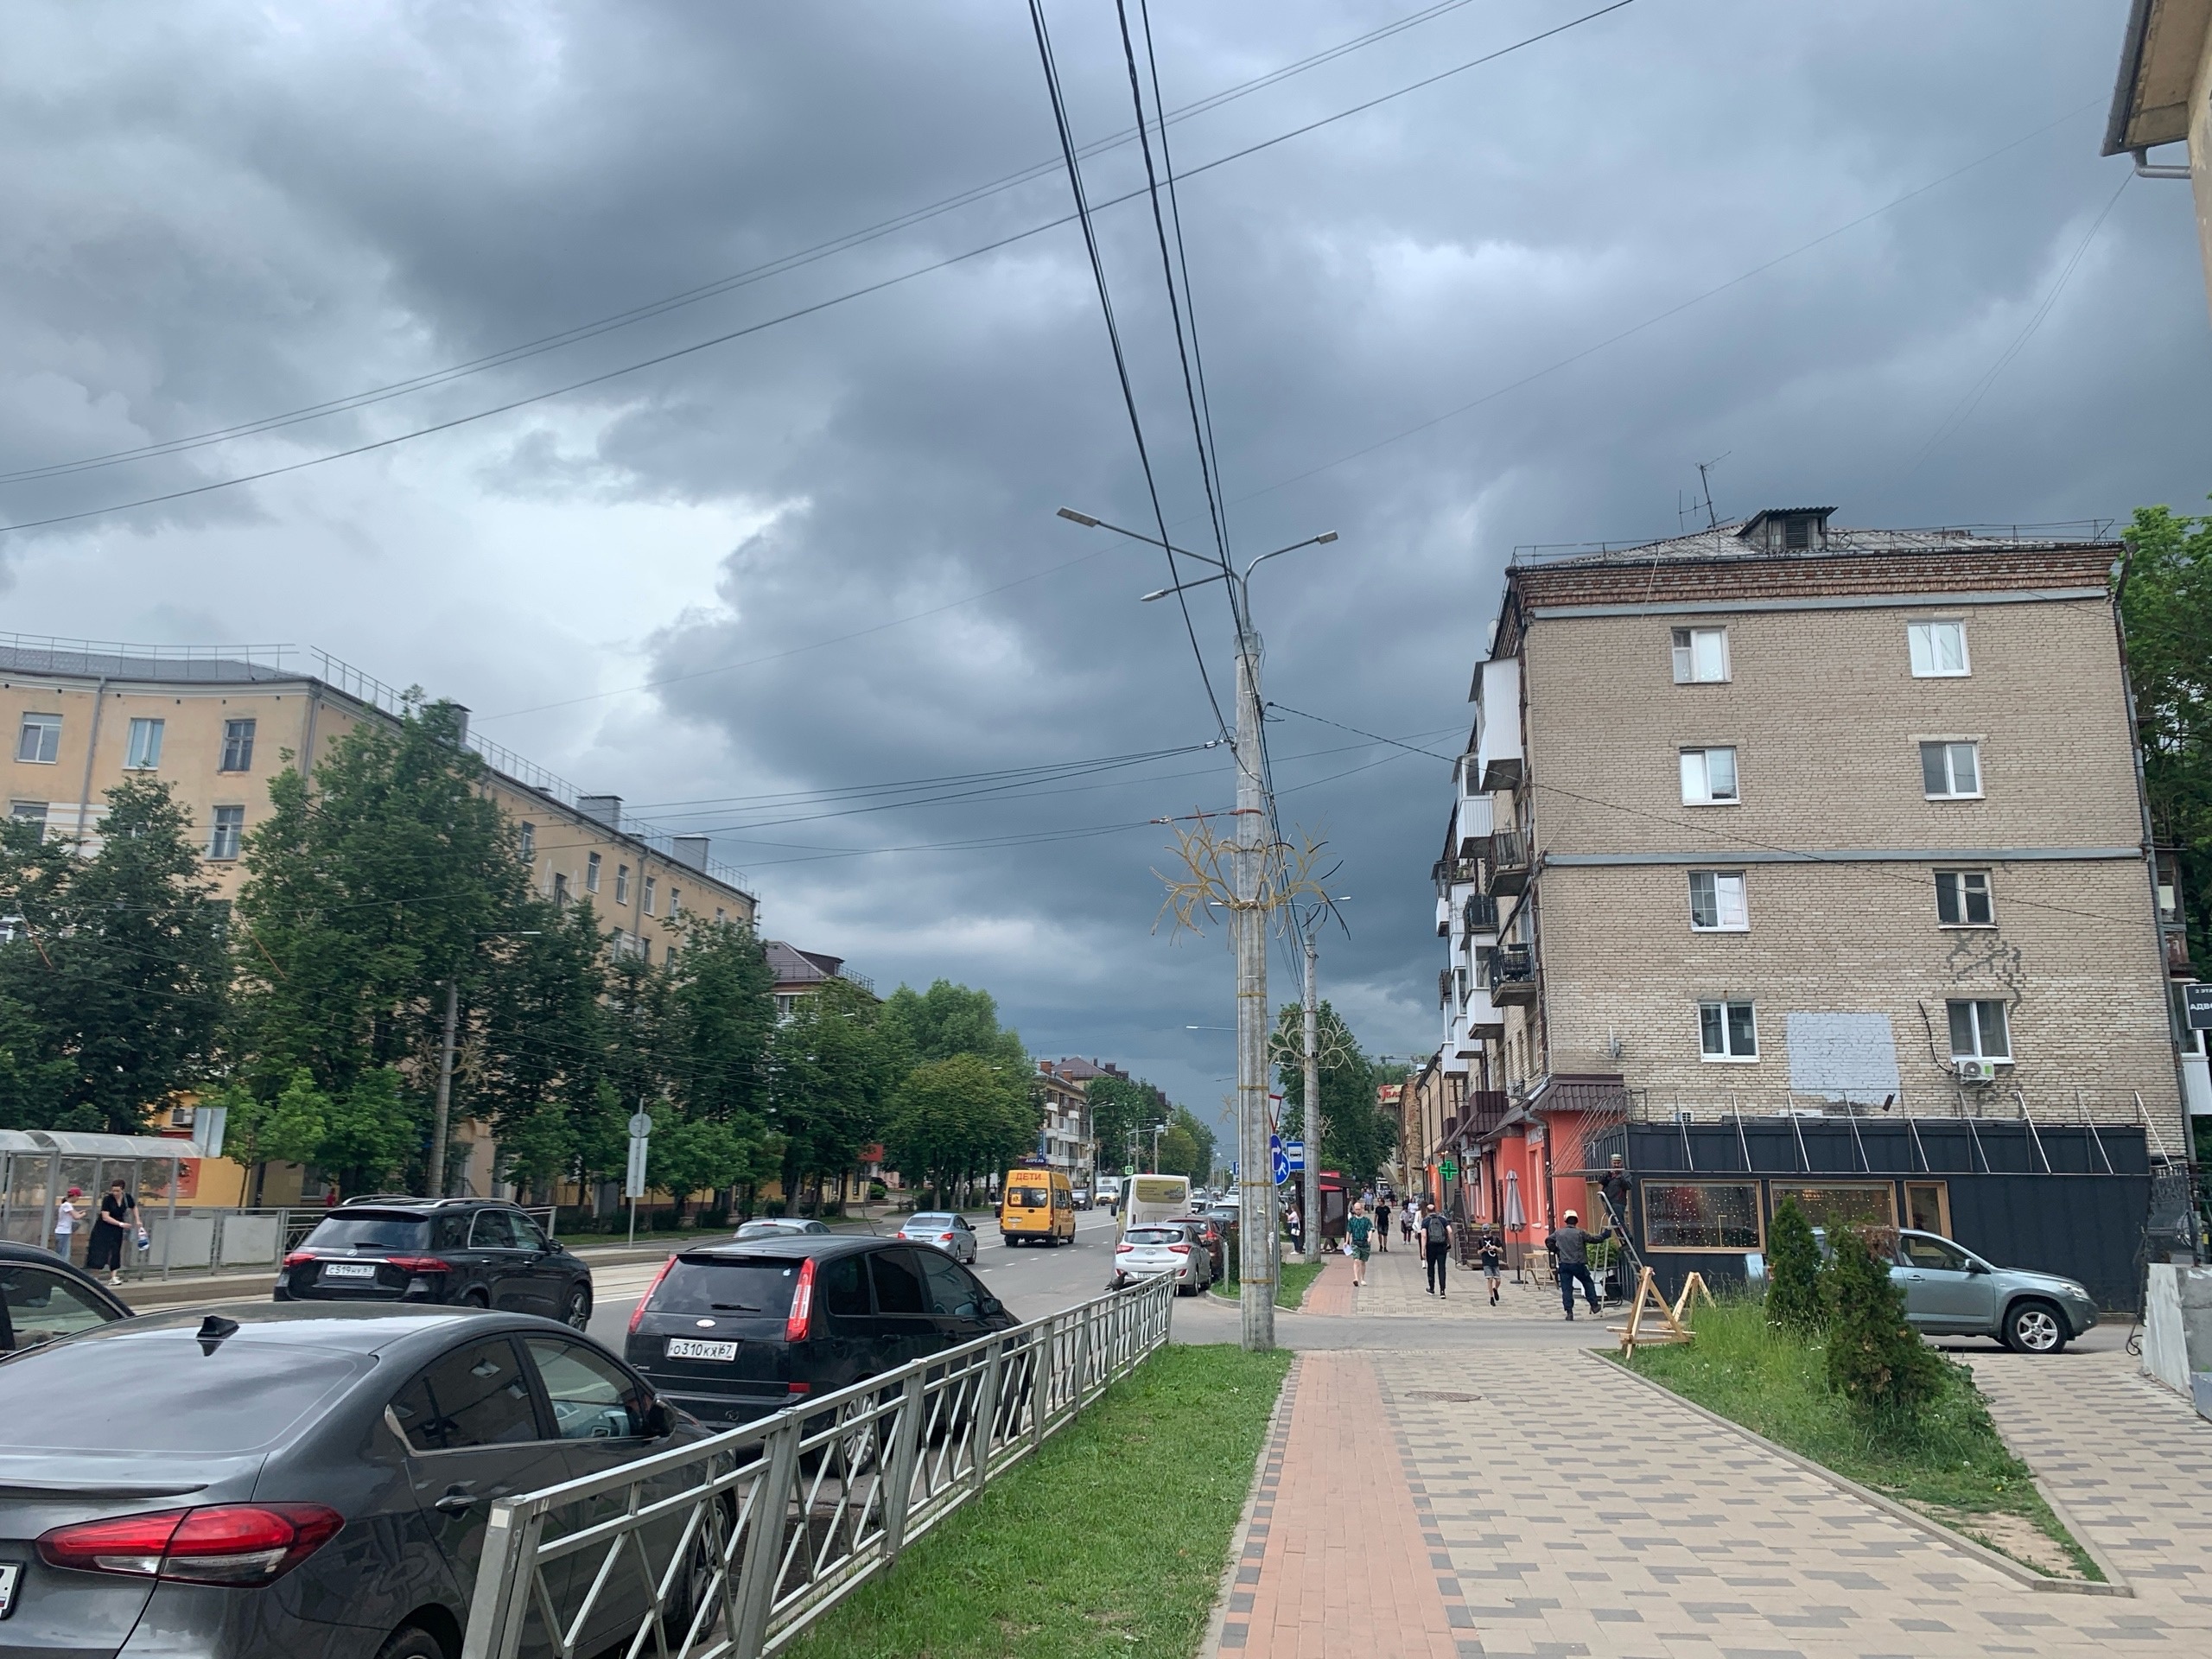 7 июня в Смоленской области сохранится дождливая погода